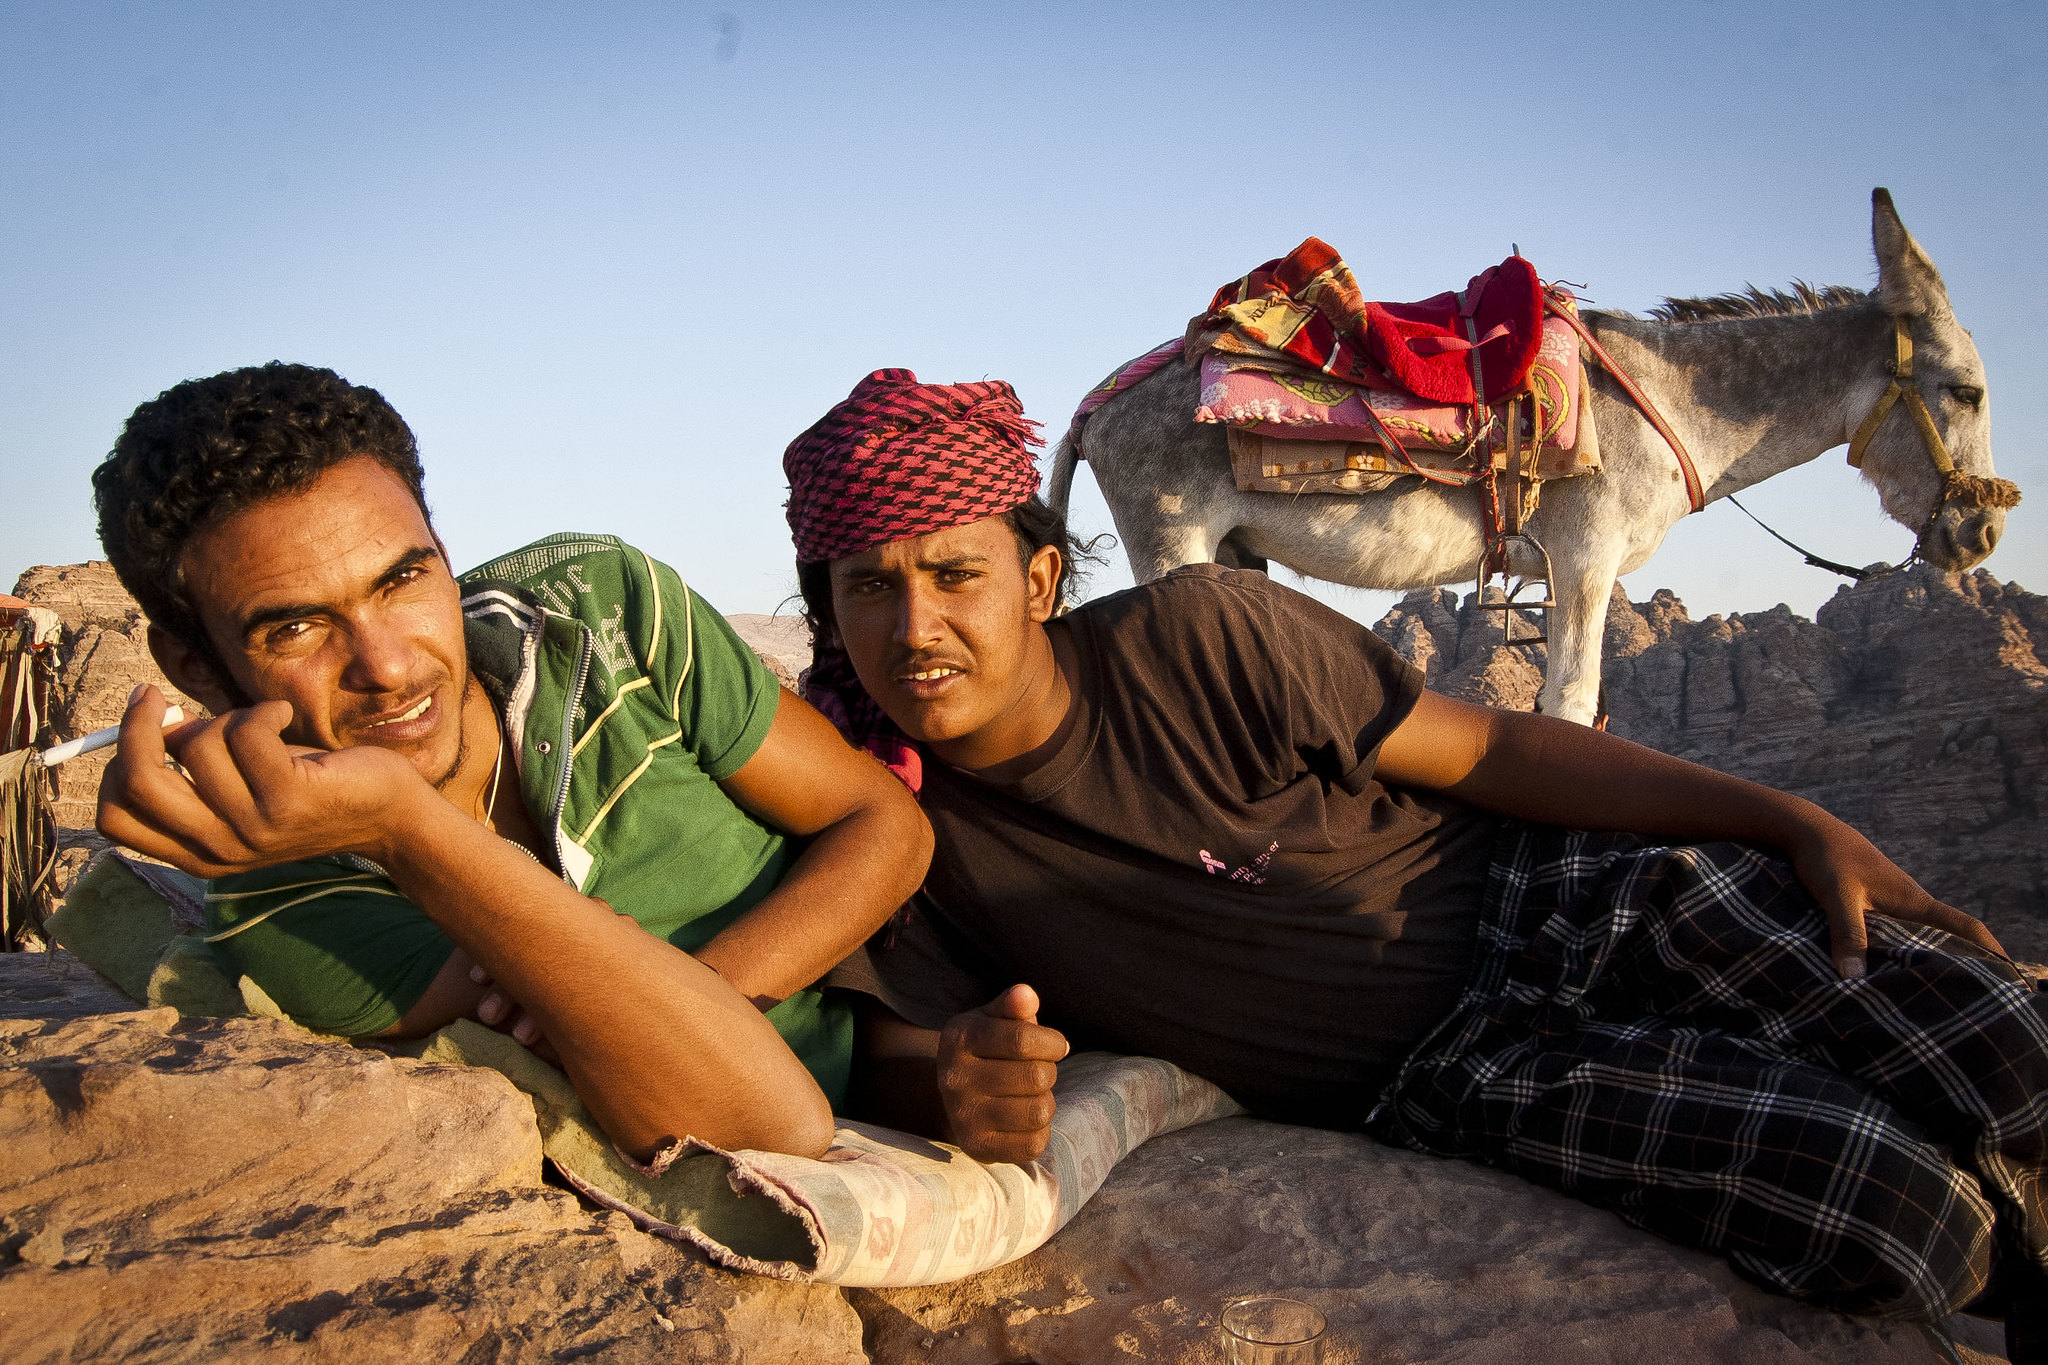 Bedouin life